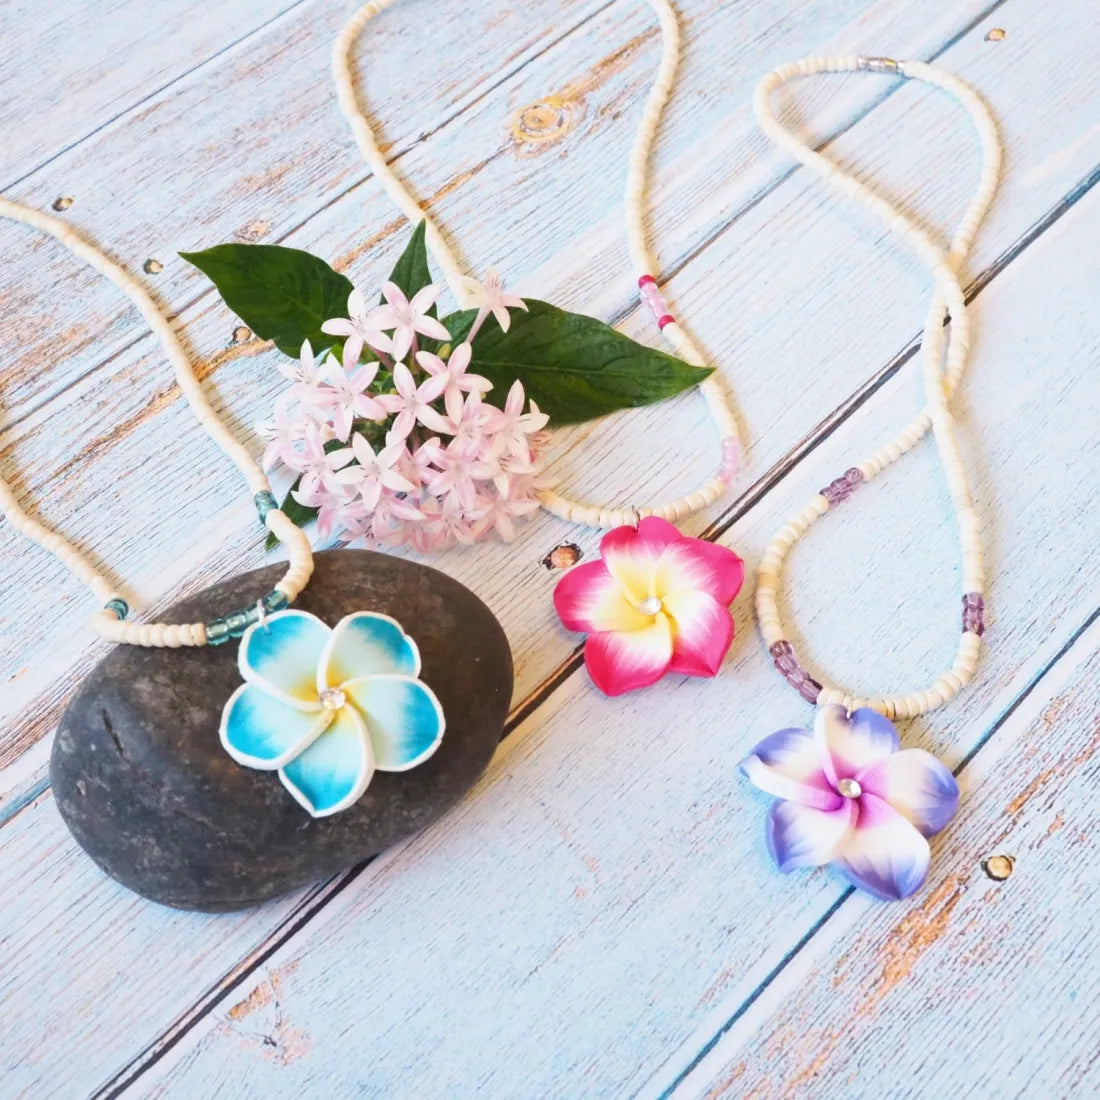 Jazzy Plumeria Pink Pendant Hawaiian Necklace - Made In Hawaii